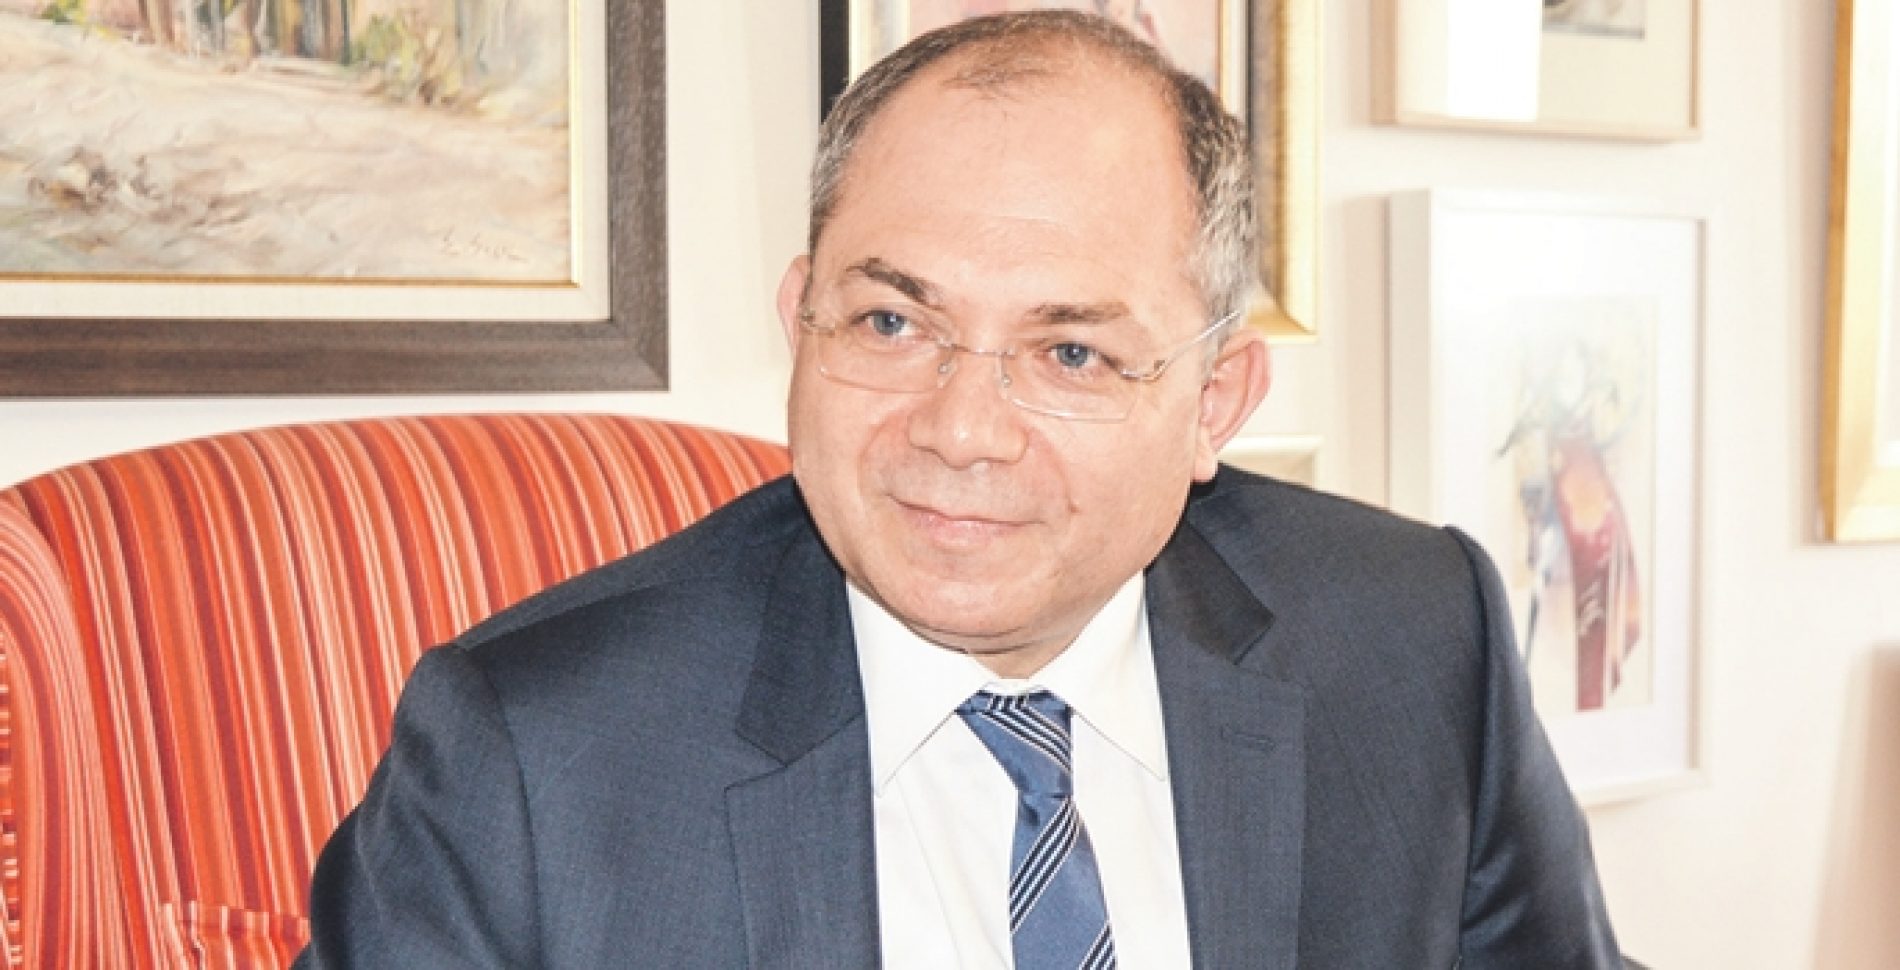 TBD Başkanı İlker Tabak Dünya gazetesinden Hüseyin Gökçe’nin “Ankara Sohbeti” adlı köşesinde yer aldı.